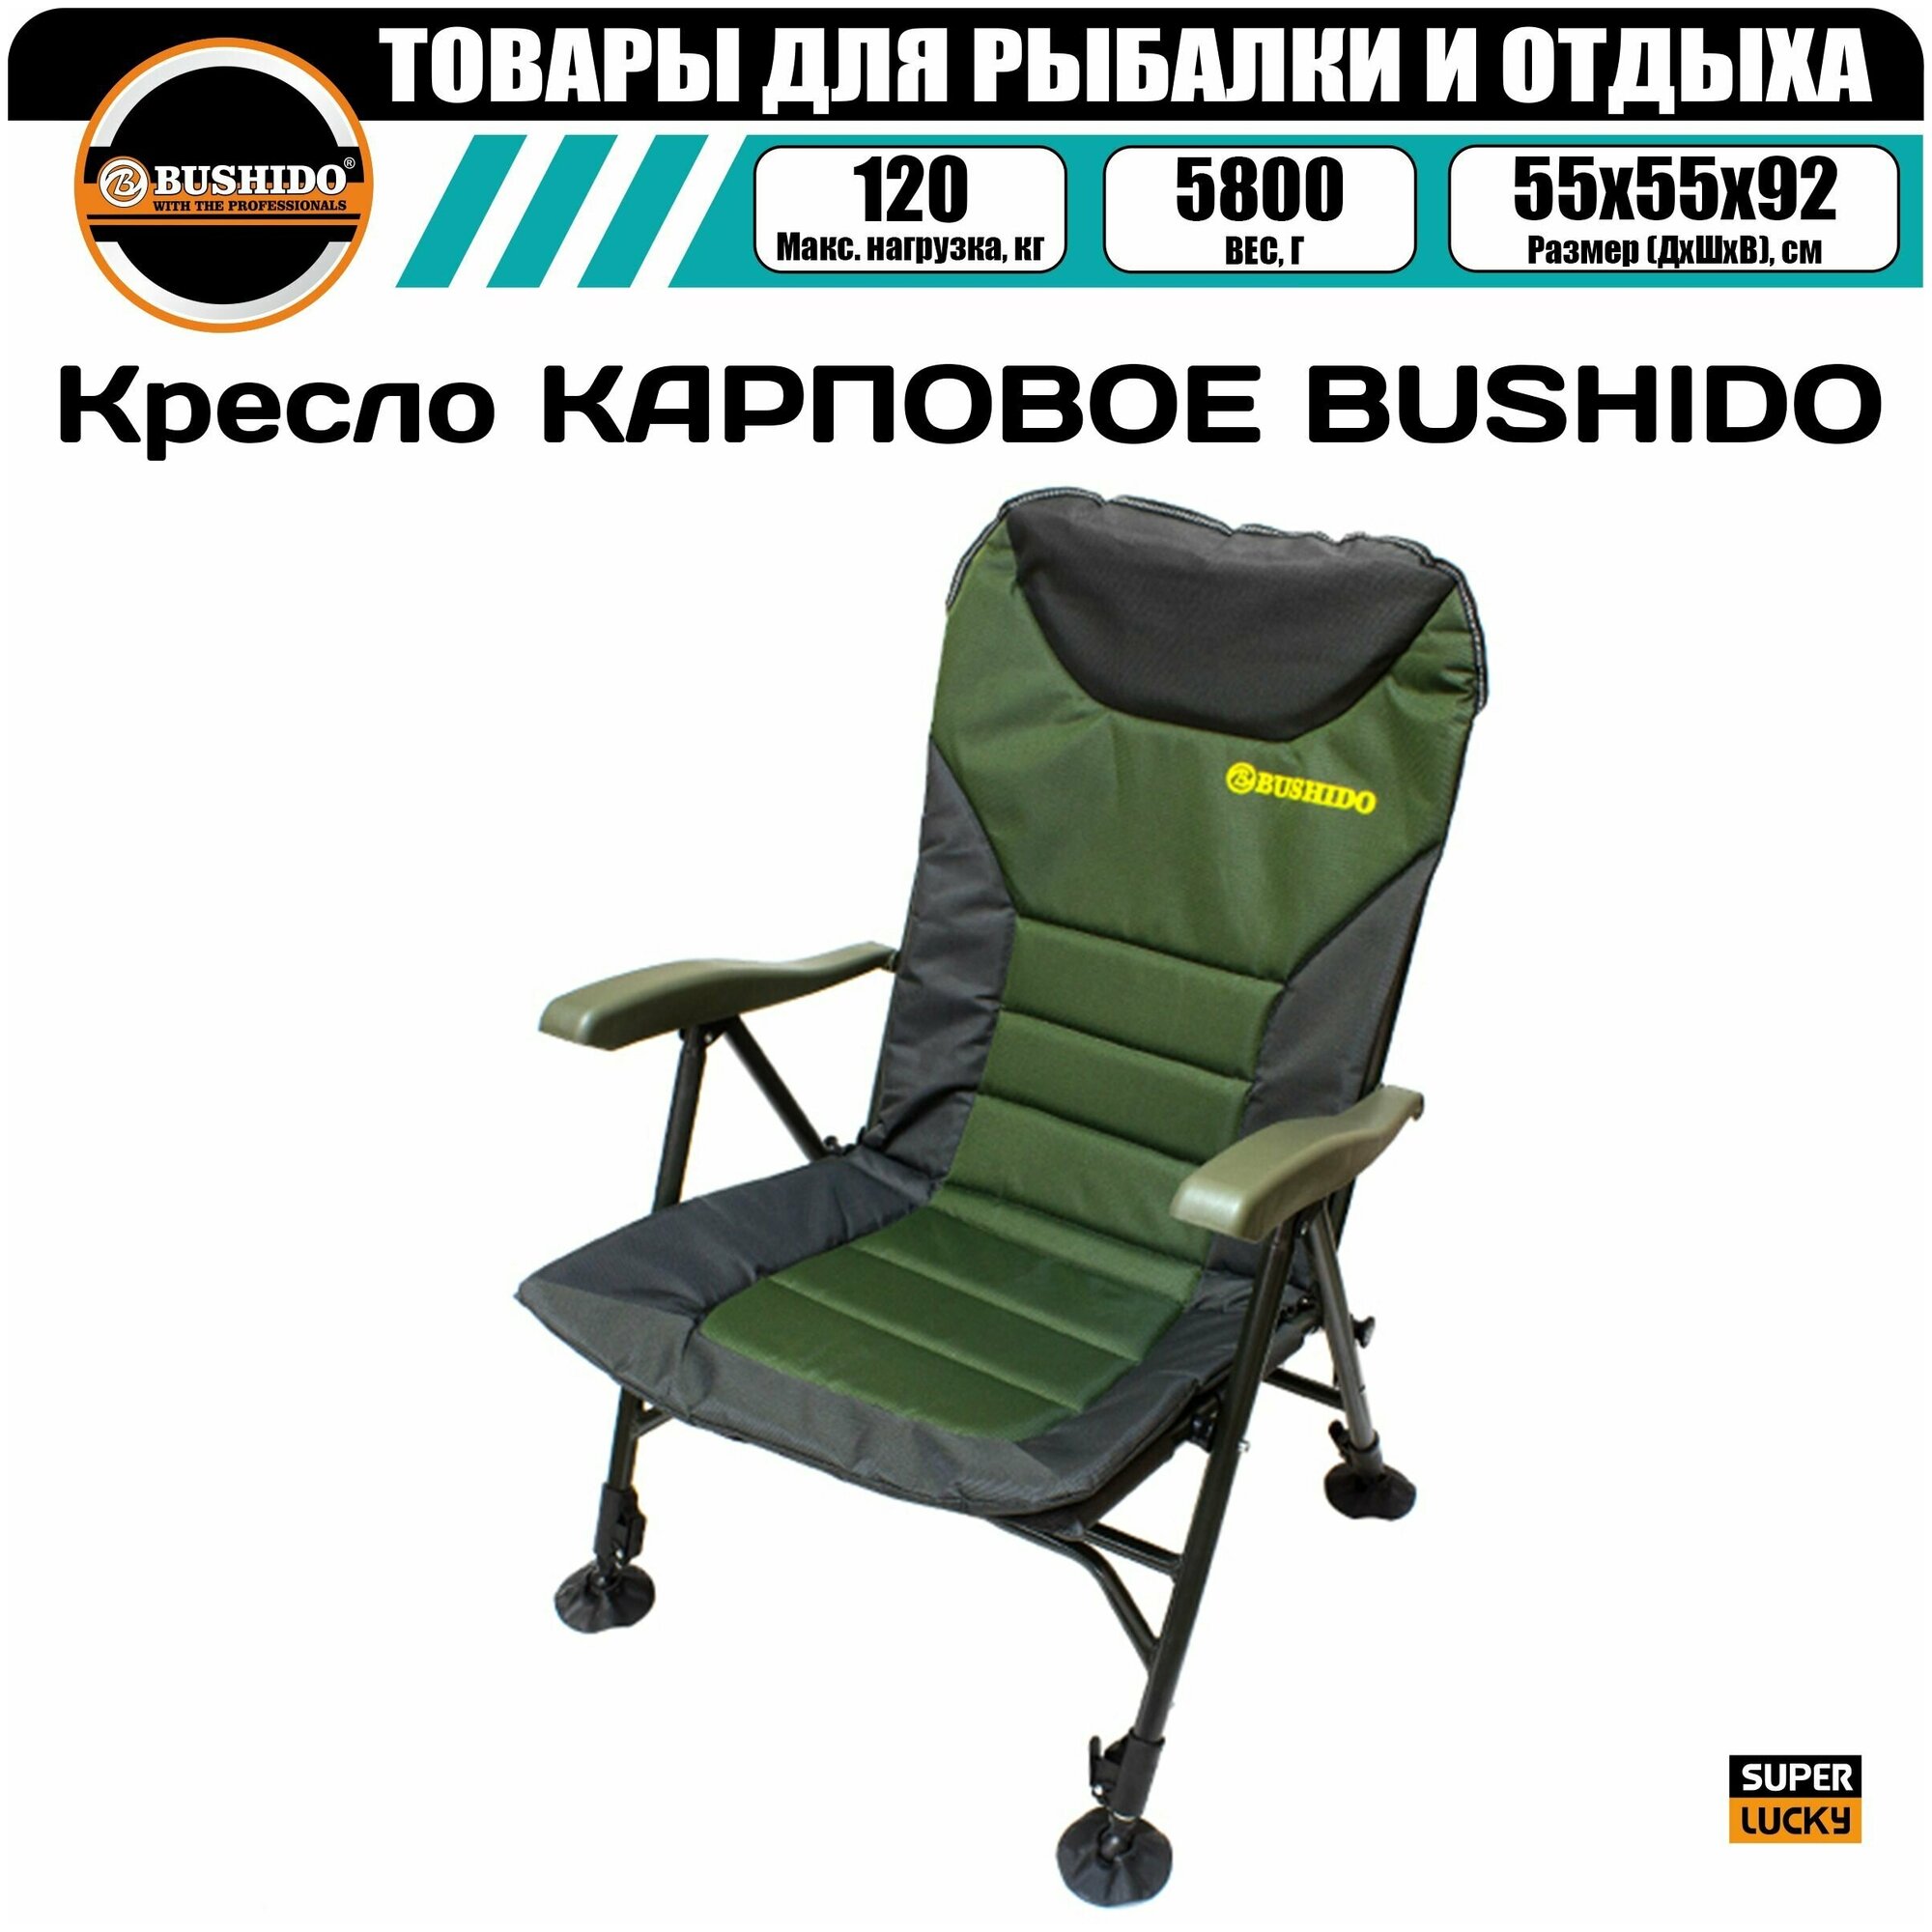 Кресло карповое BUSHIDO c регулируемыми подлокотниками, складное, туристическое, походное, запасная пластикова ножка